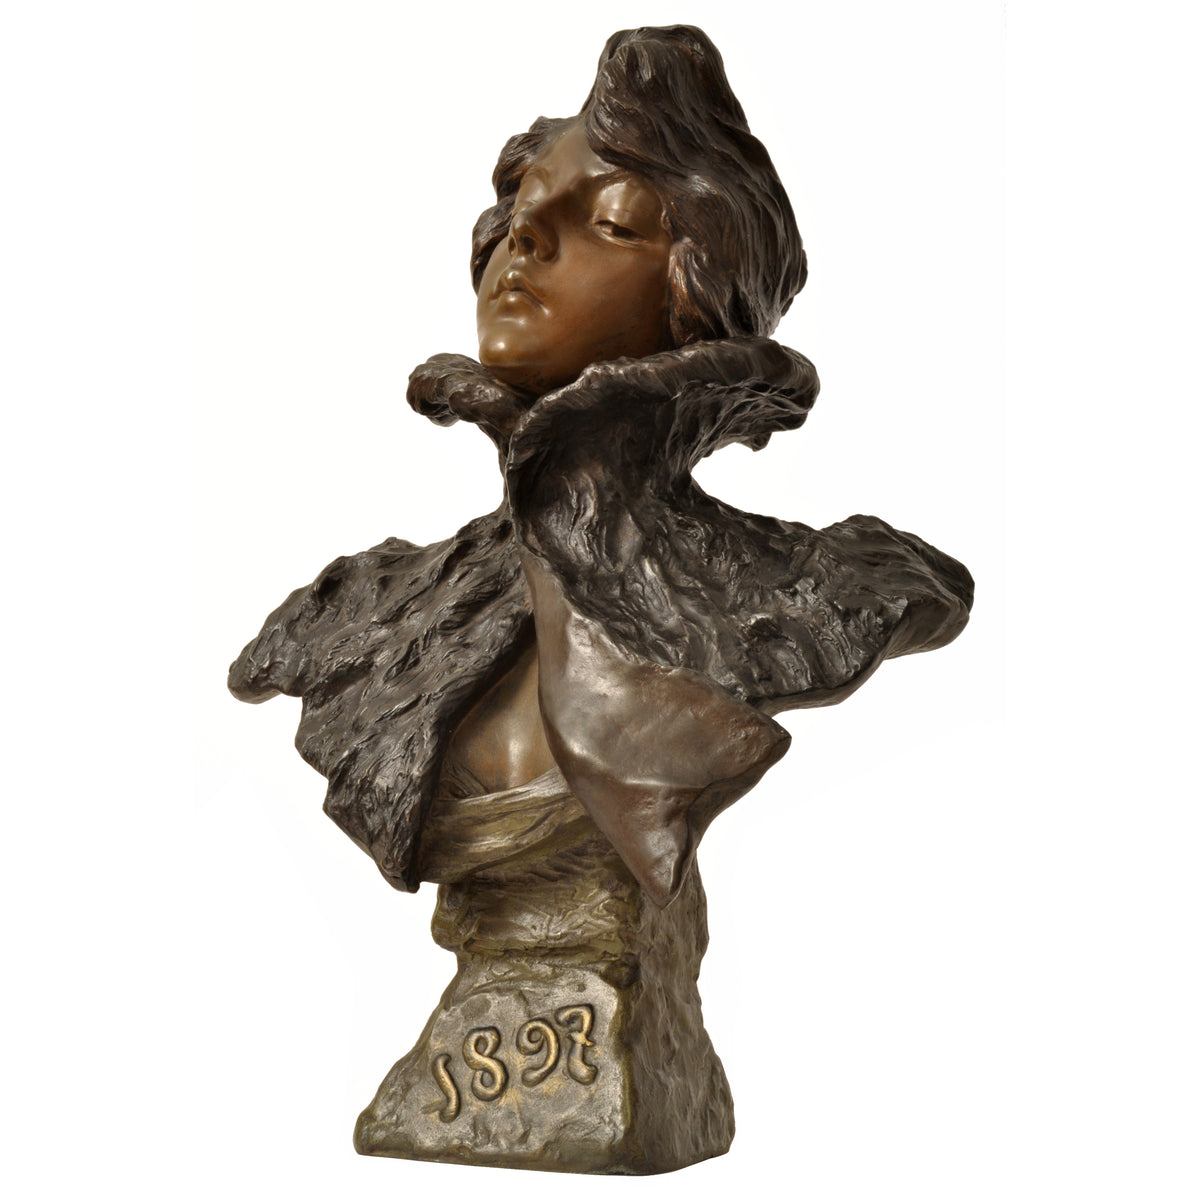 Antique French Art Nouveau Bronze Female Bust Sculpture "1897" Emanuel Villanis